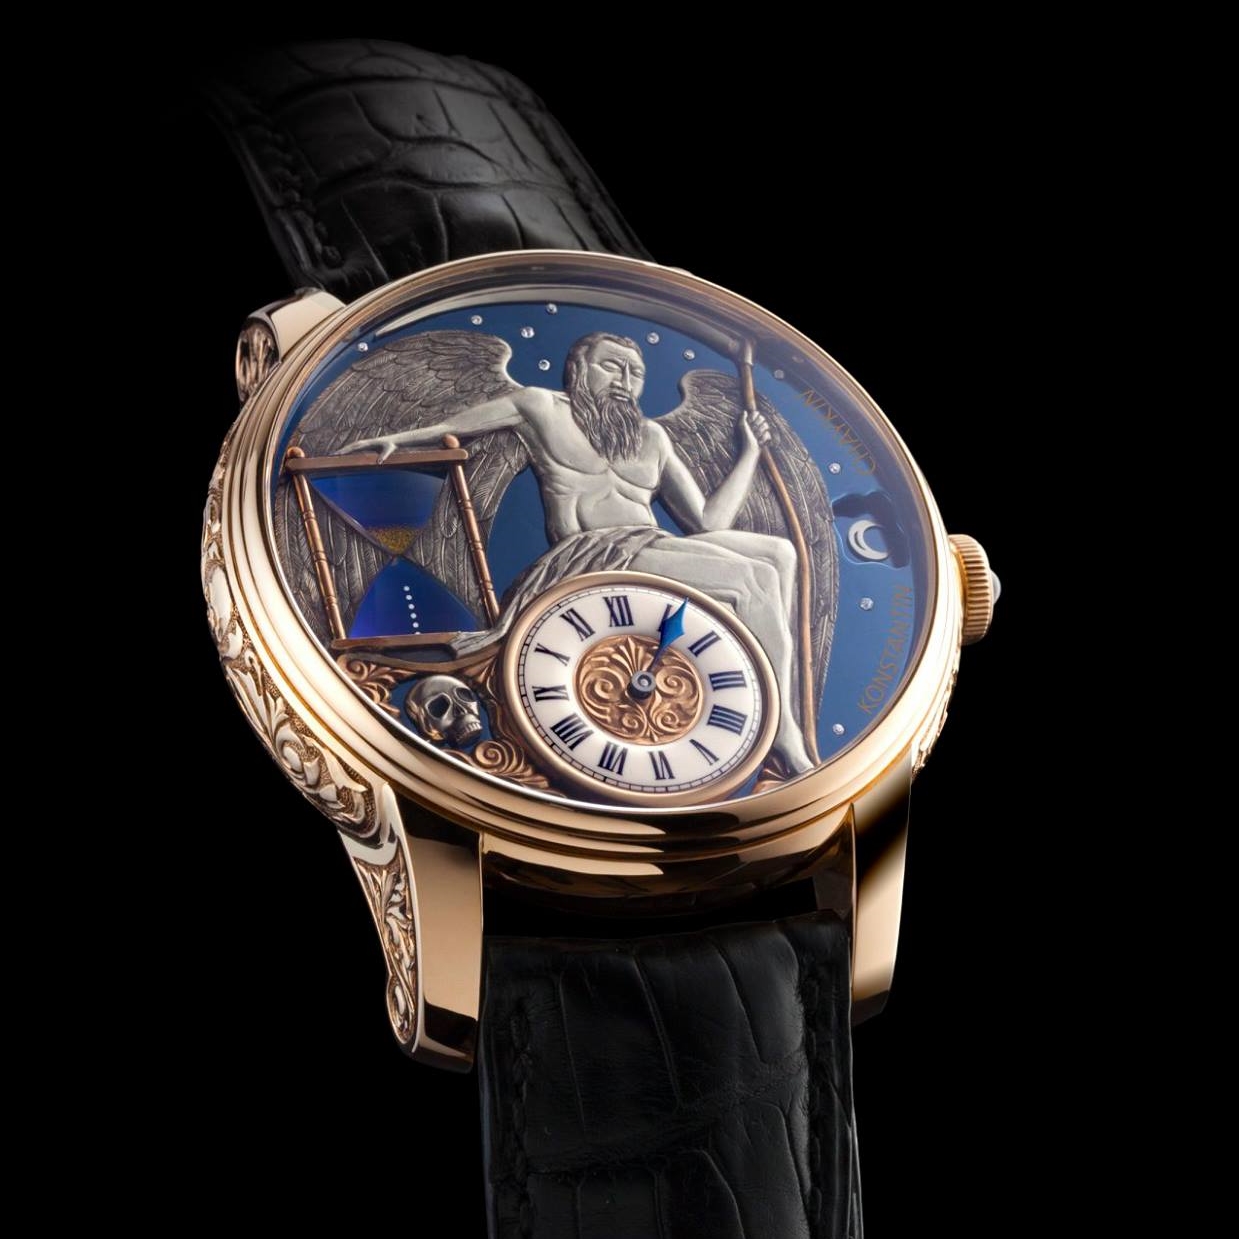 The Carpe Diem Watch by Konstantin Chaykin - Самые красивые часы в